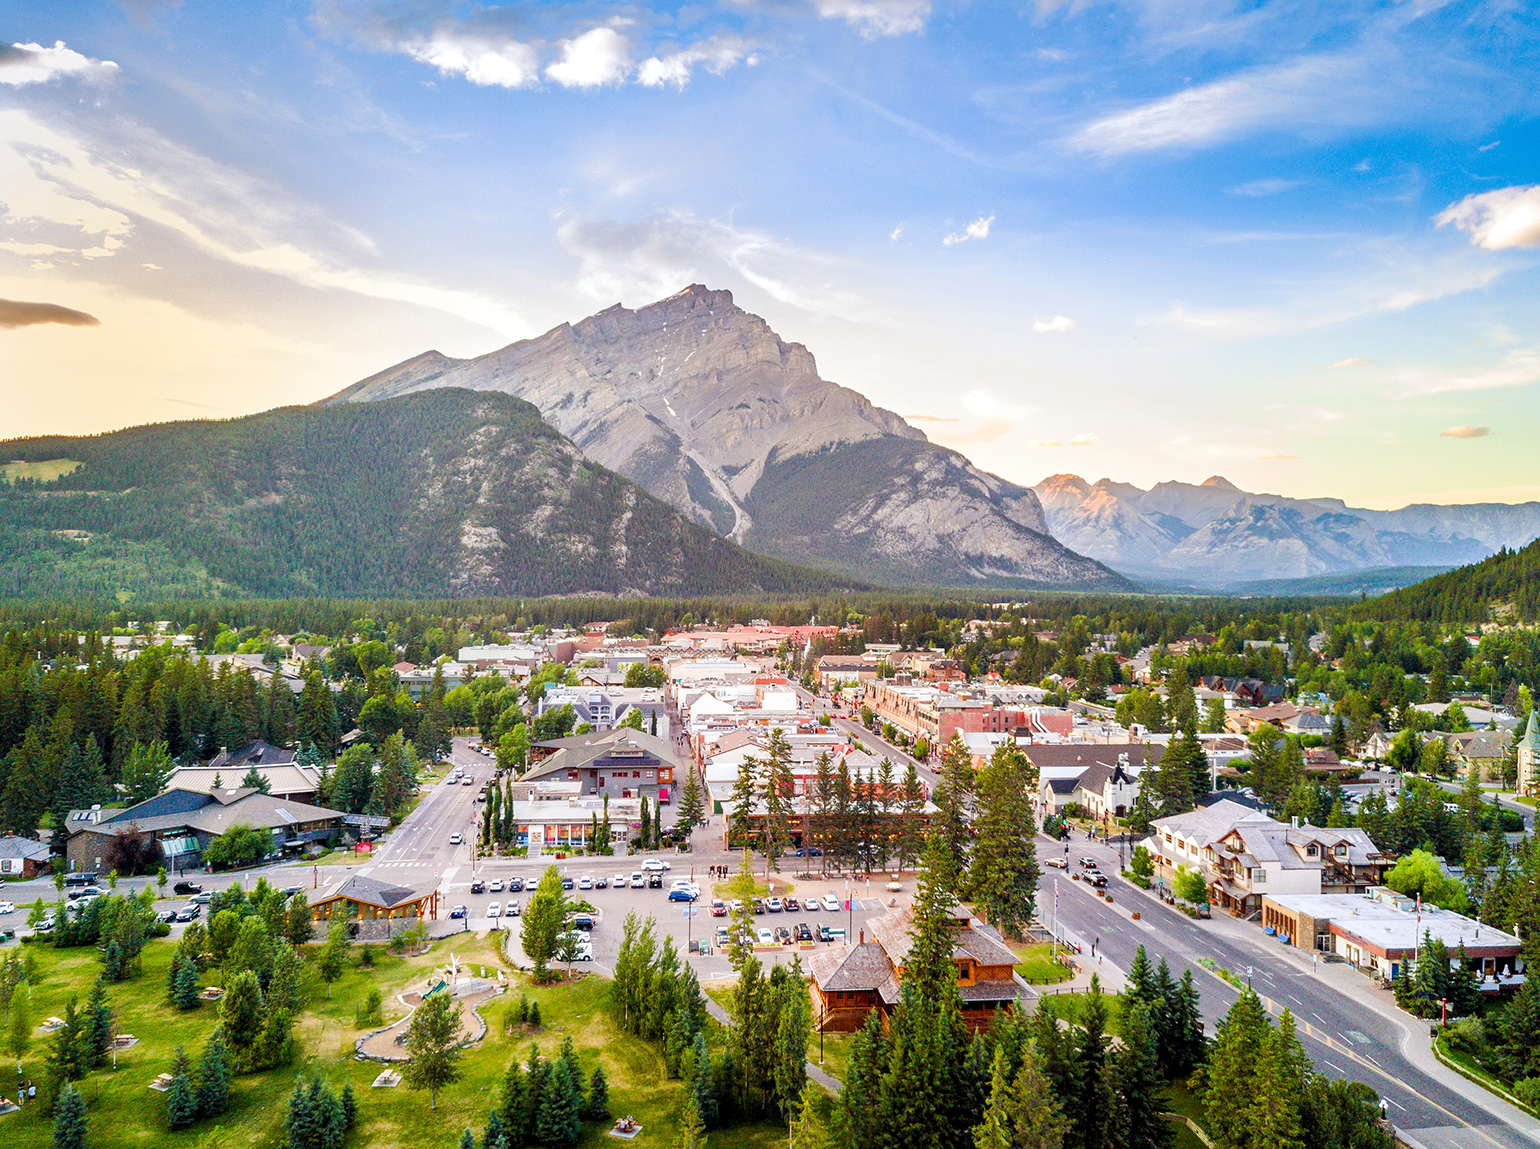 Amazing cityscape in Banff Alberta